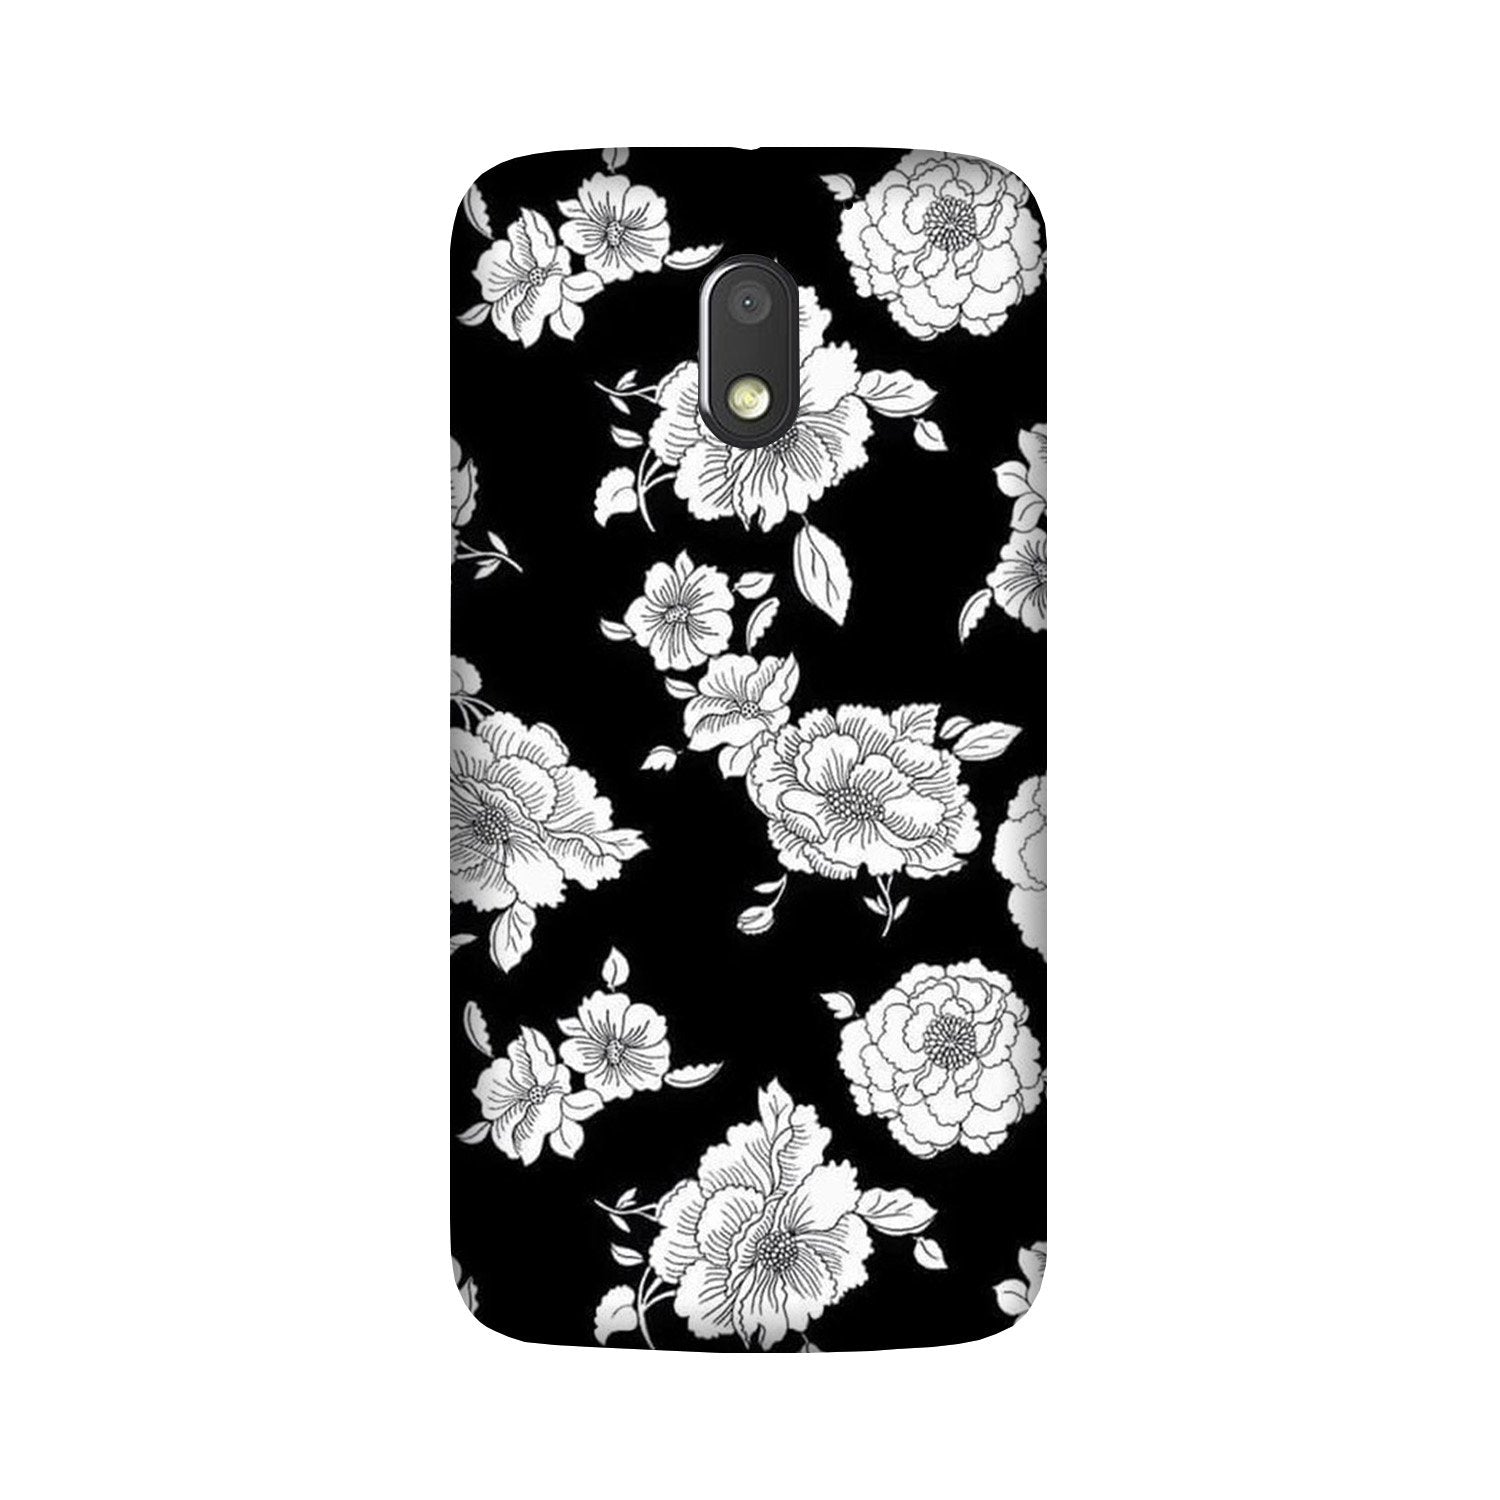 White flowers Black Background Case for Moto E3 Power